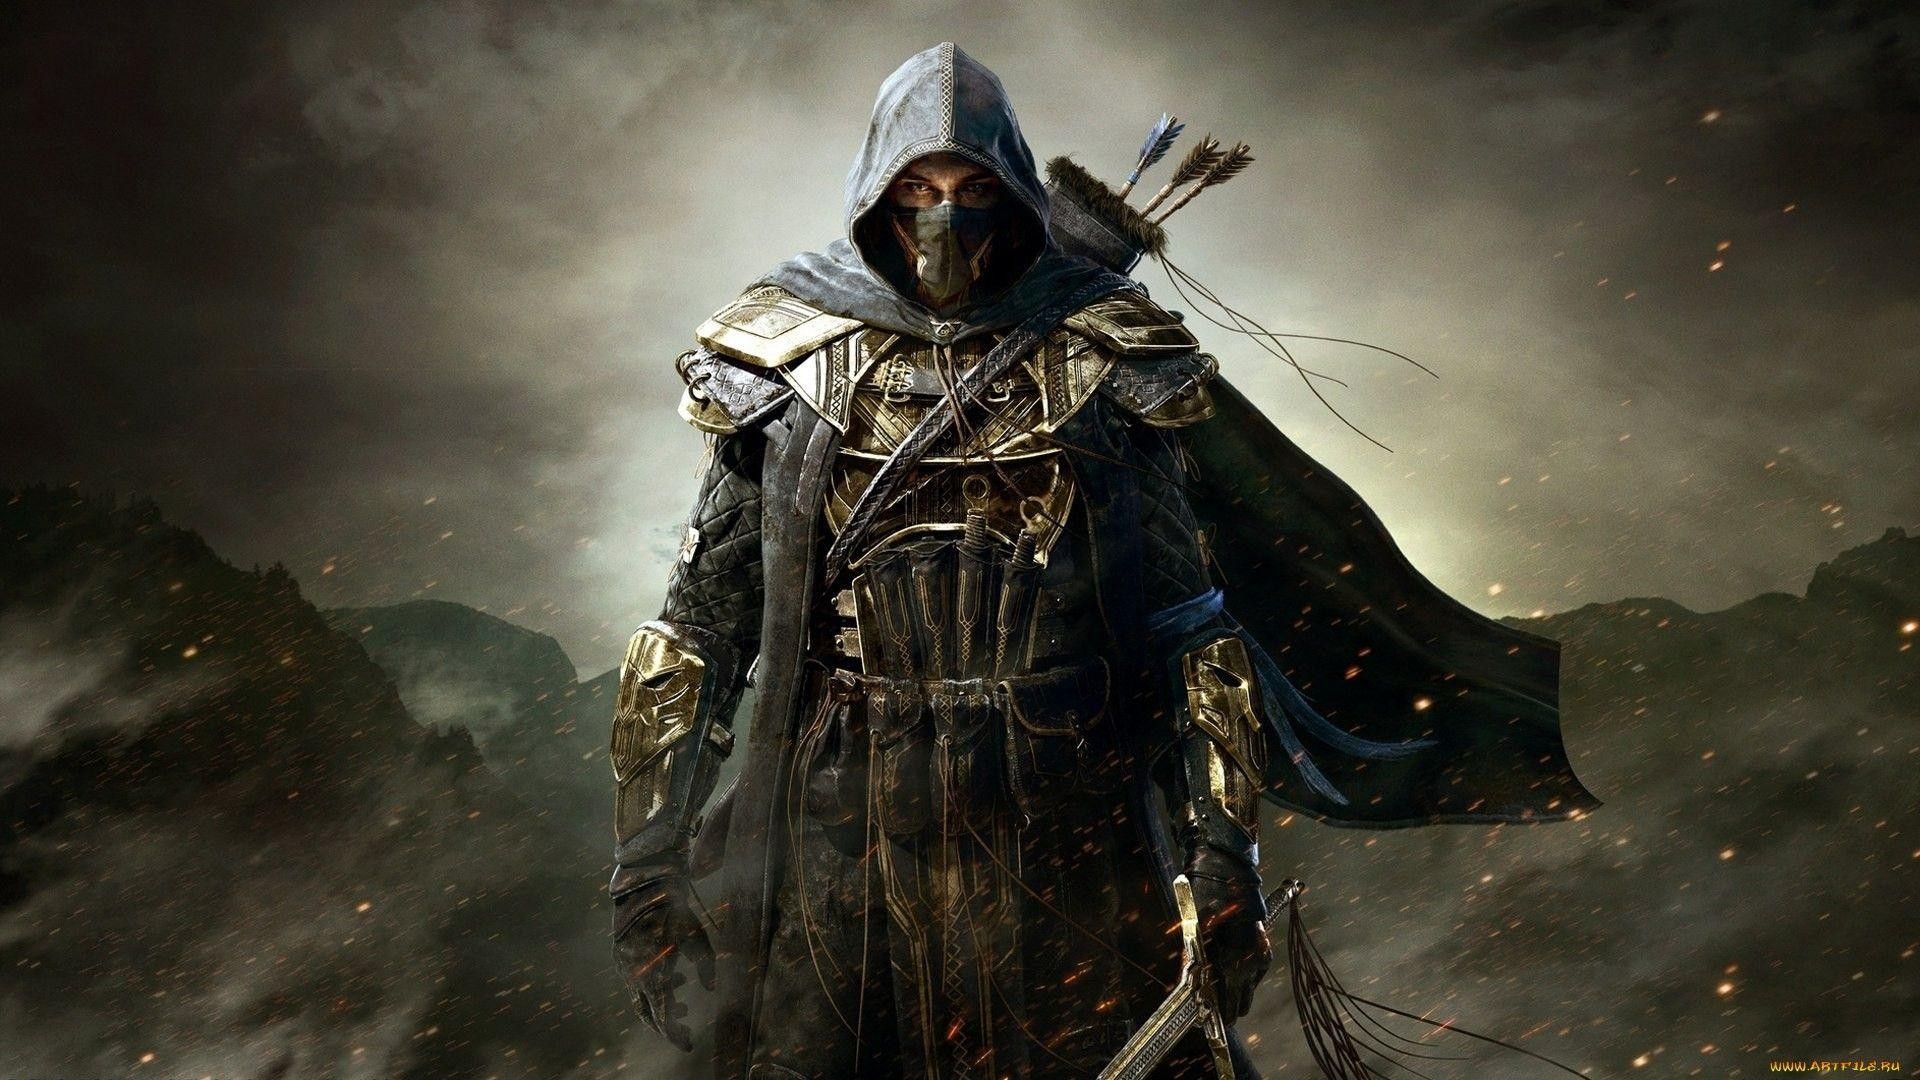 The Elder Scrolls VI está a mais de 5 anos de ser lançado